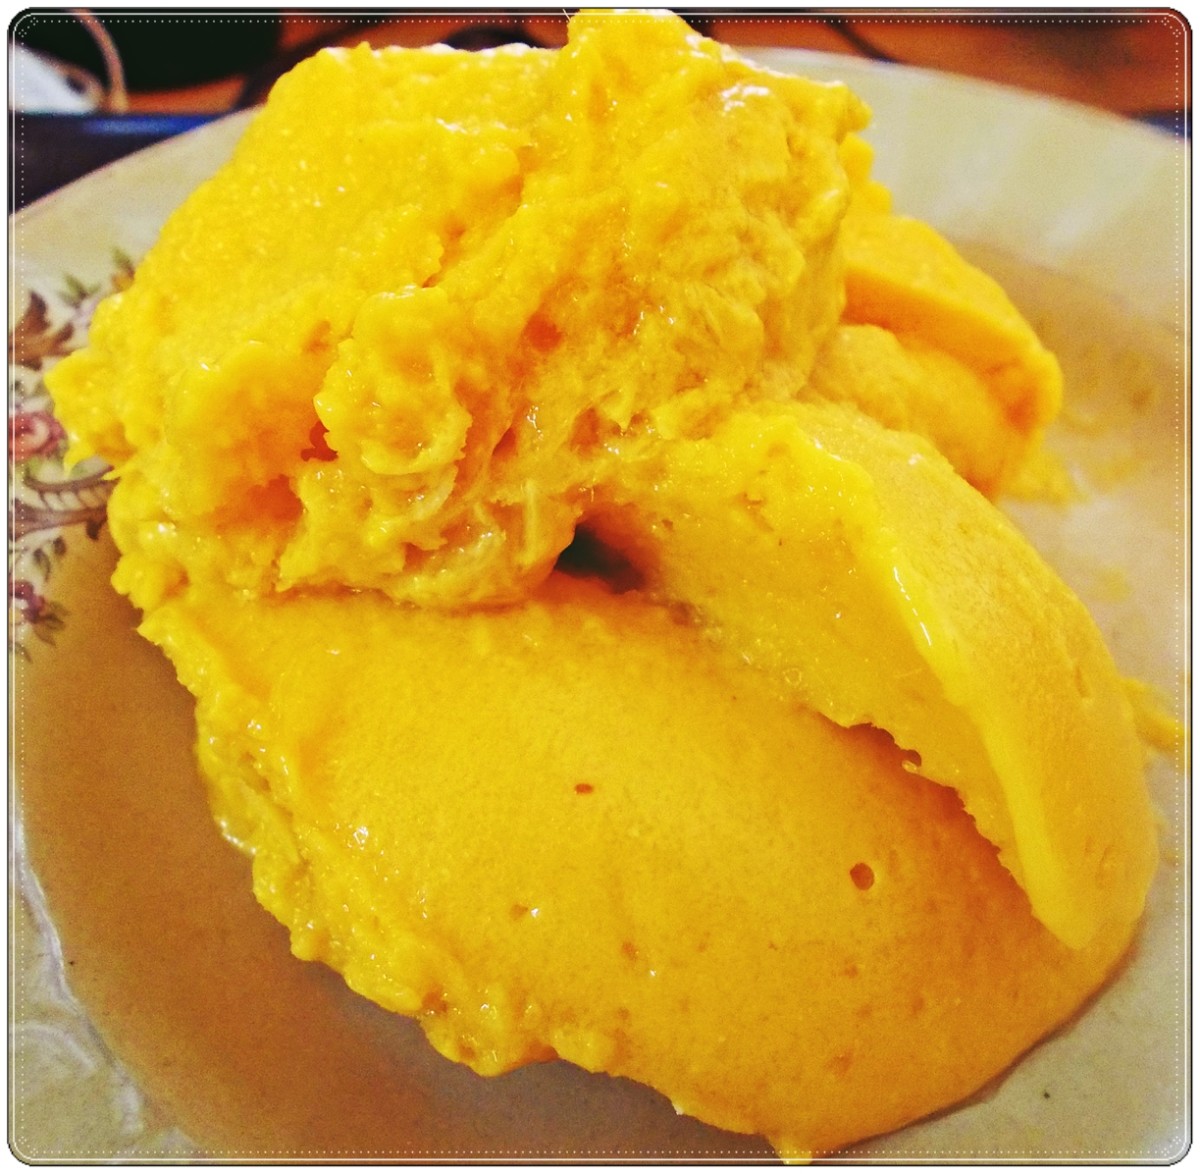 Sweet, creamy and toothsome vegan mango ice cream.